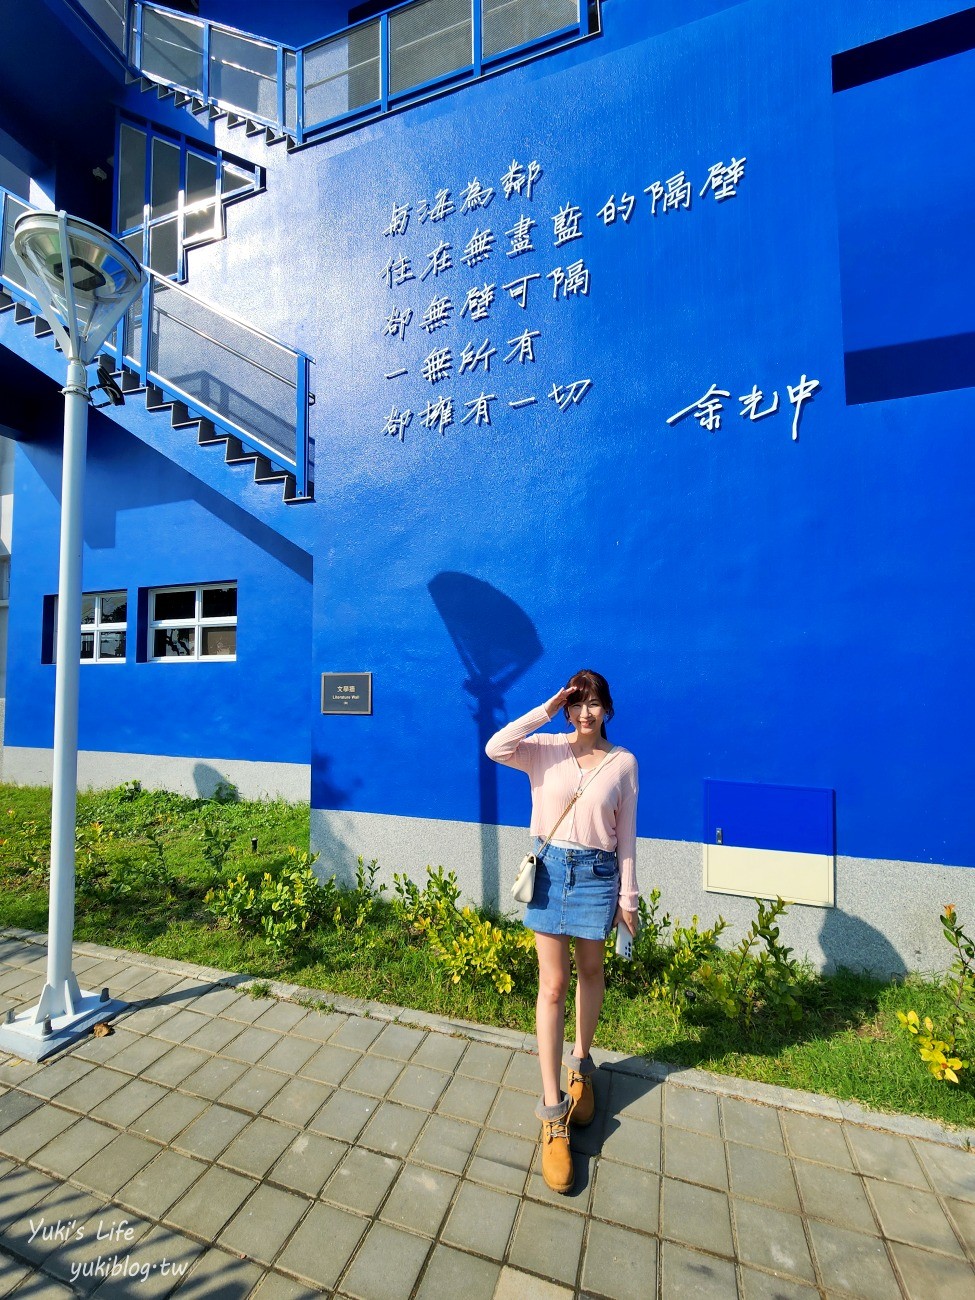 台南新景點【安平航海城】登上鐵達尼號不是夢！藍白建築、異國場景超好拍 - yukiblog.tw